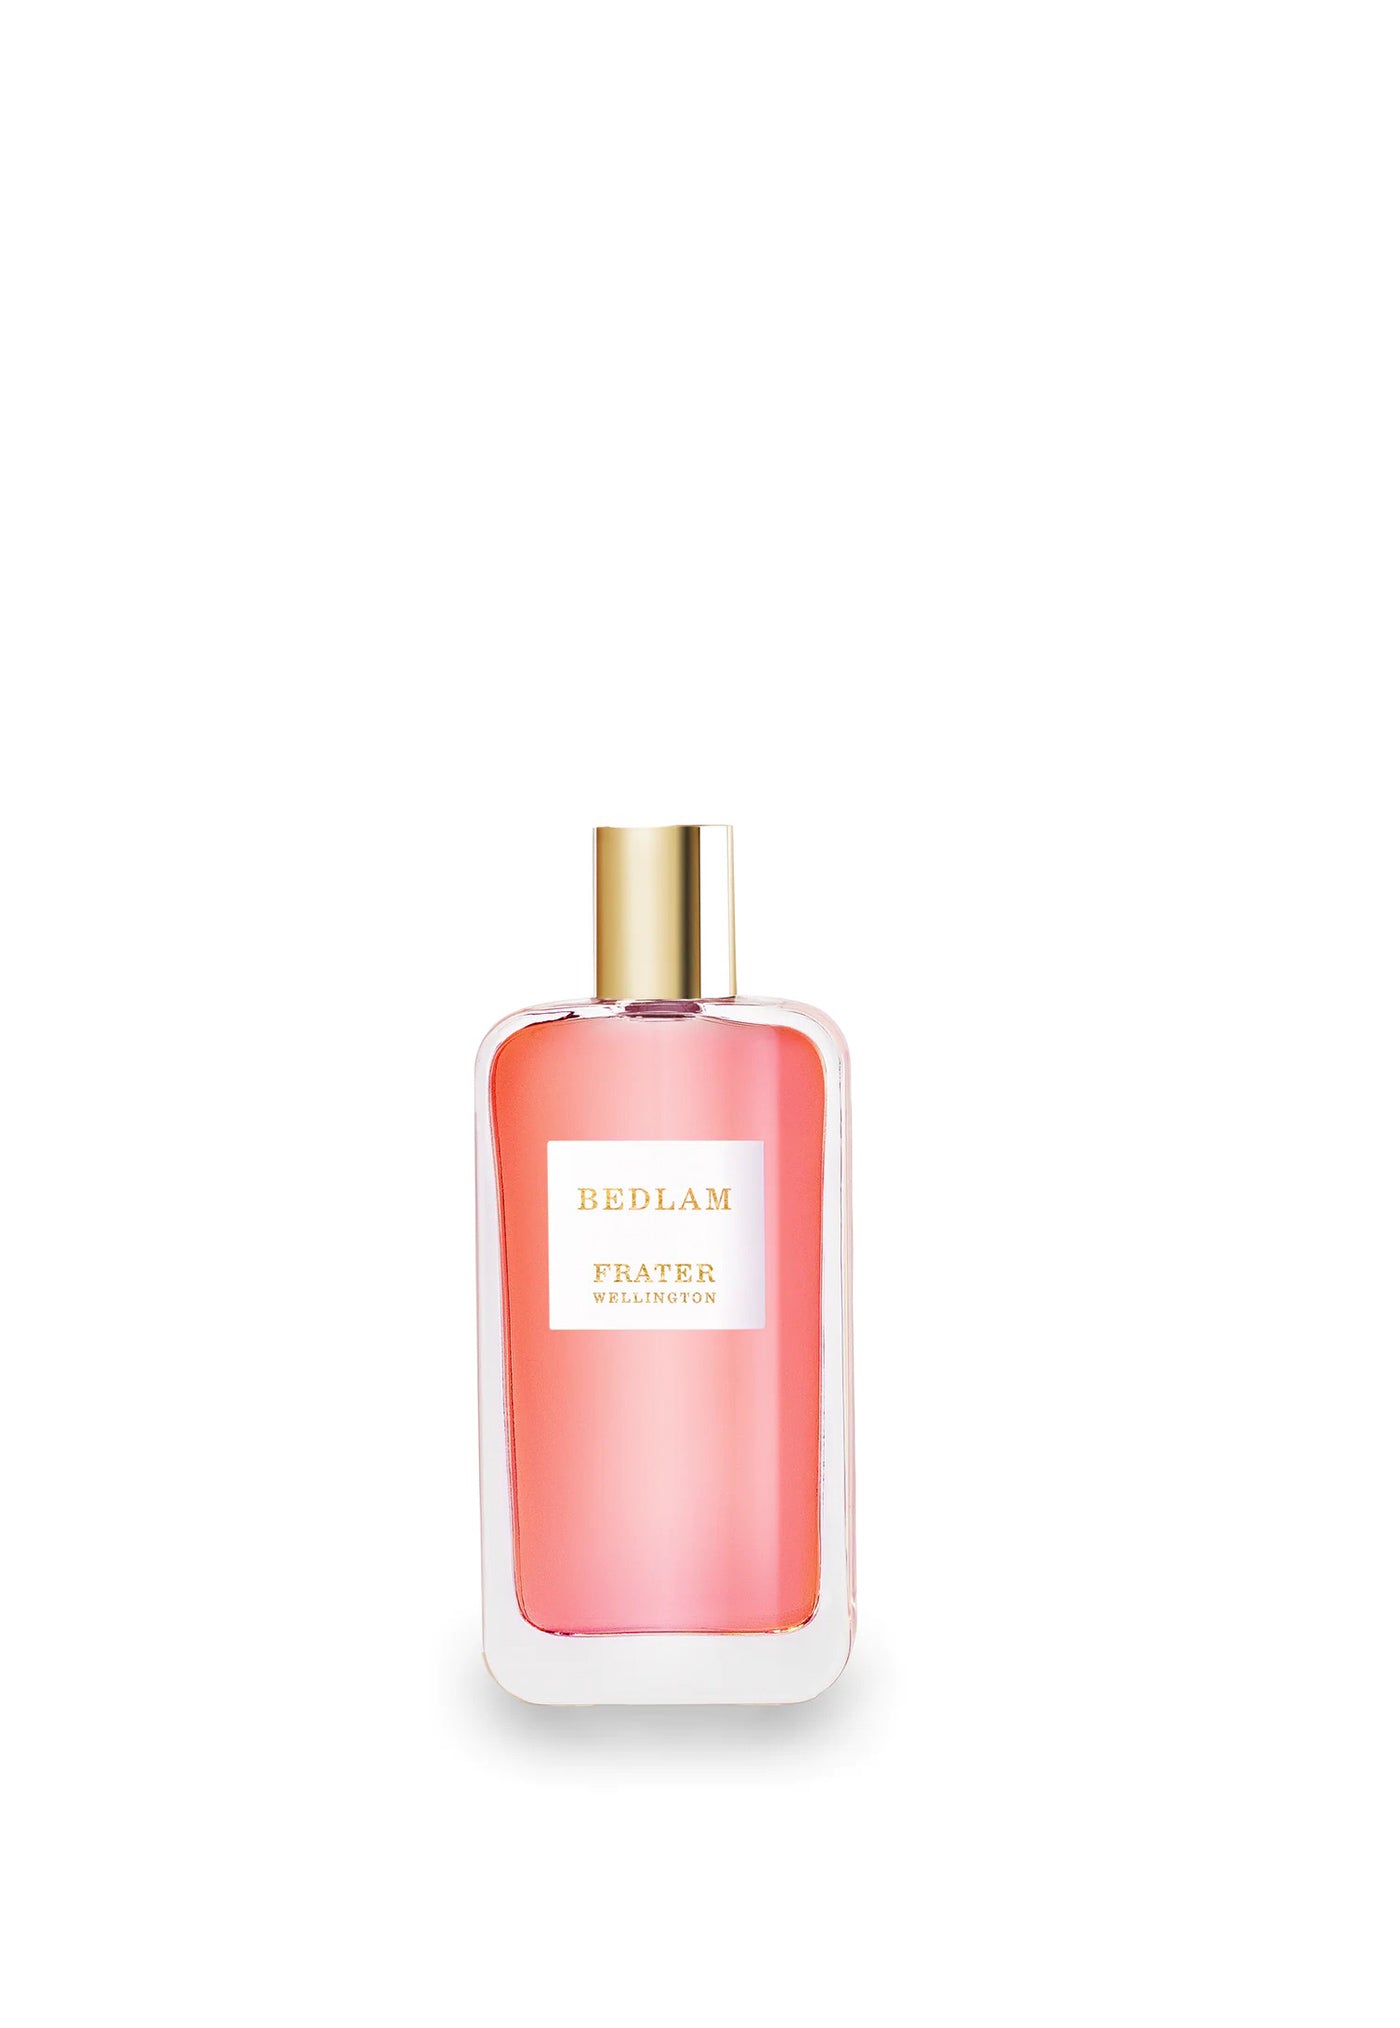 Bedlam Parfum Spray sold by Angel Divine